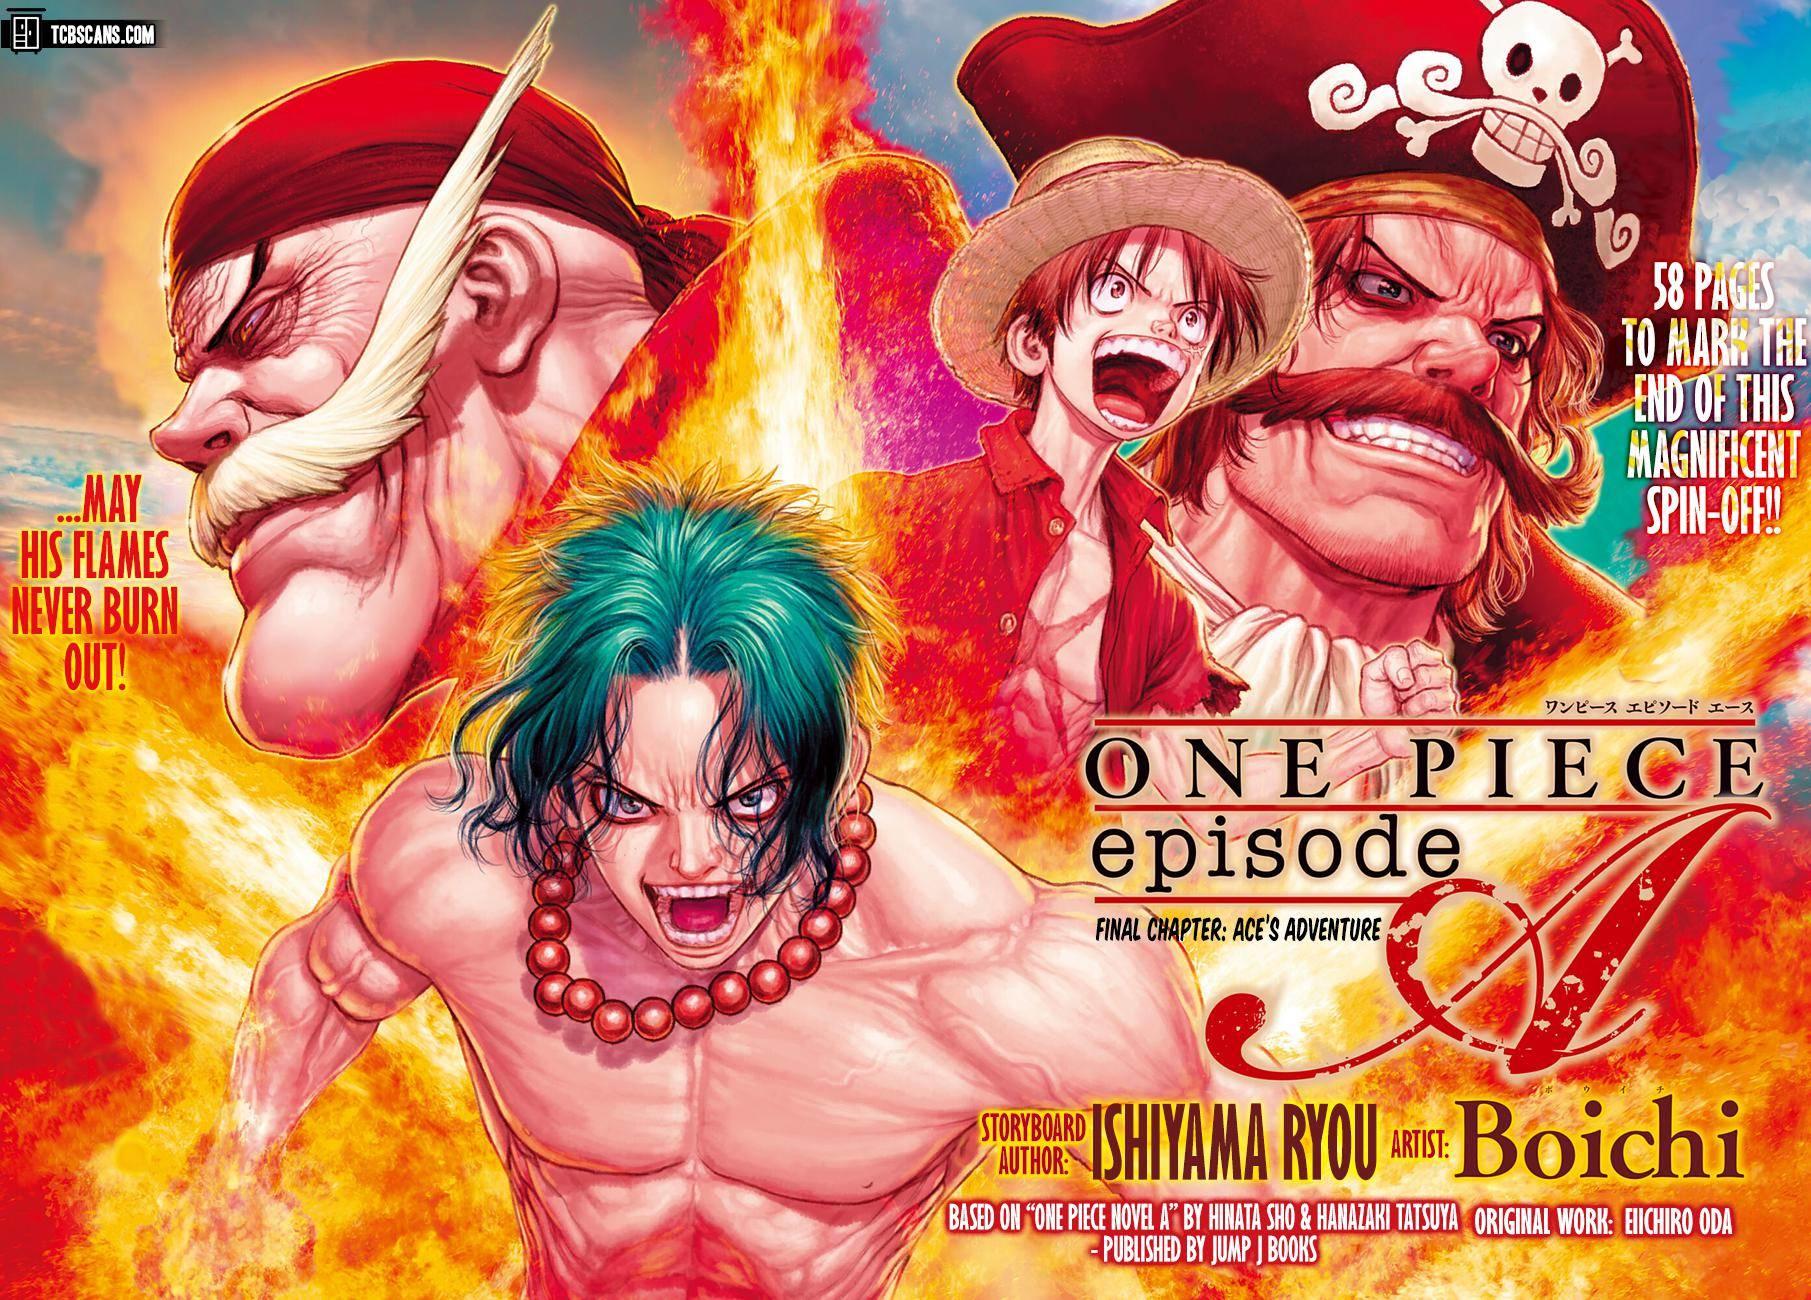 KOKORO THE MERMAID?!, One Piece Episode 306 REACTION